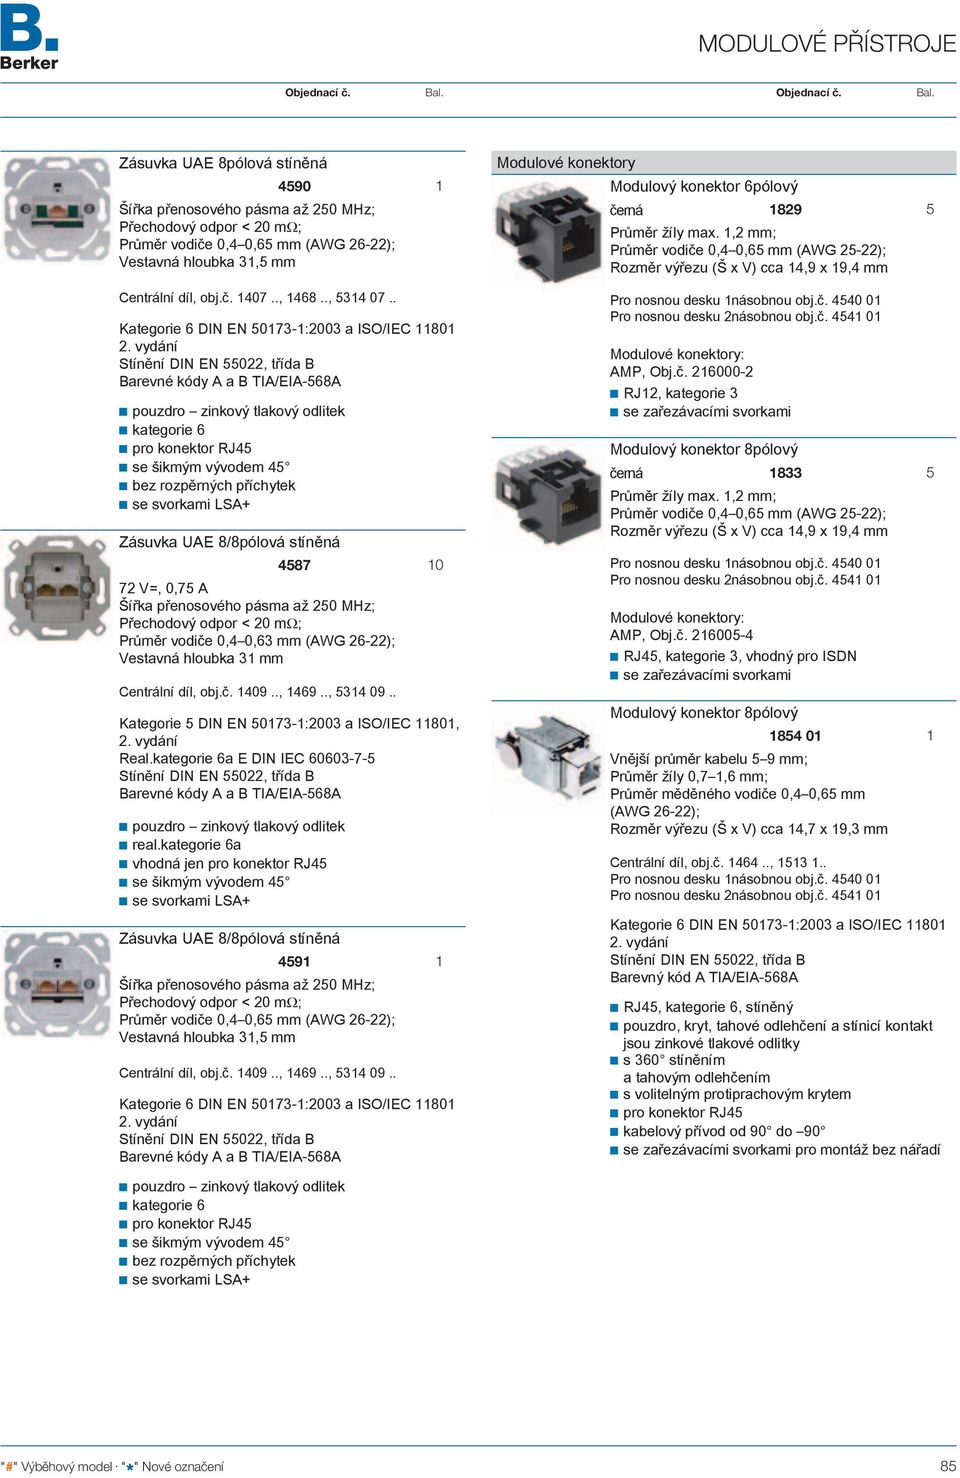 vydání Stínění DIN EN 55022, třída B Barevné kódy A a B TIA/EIA-568A pouzdro zinkový tlakový odlitek kategorie 6 pro konektor RJ45 se šikmým vývodem 45 se svorkami LSA+ Zásuvka UAE 8/8pólová stíněná